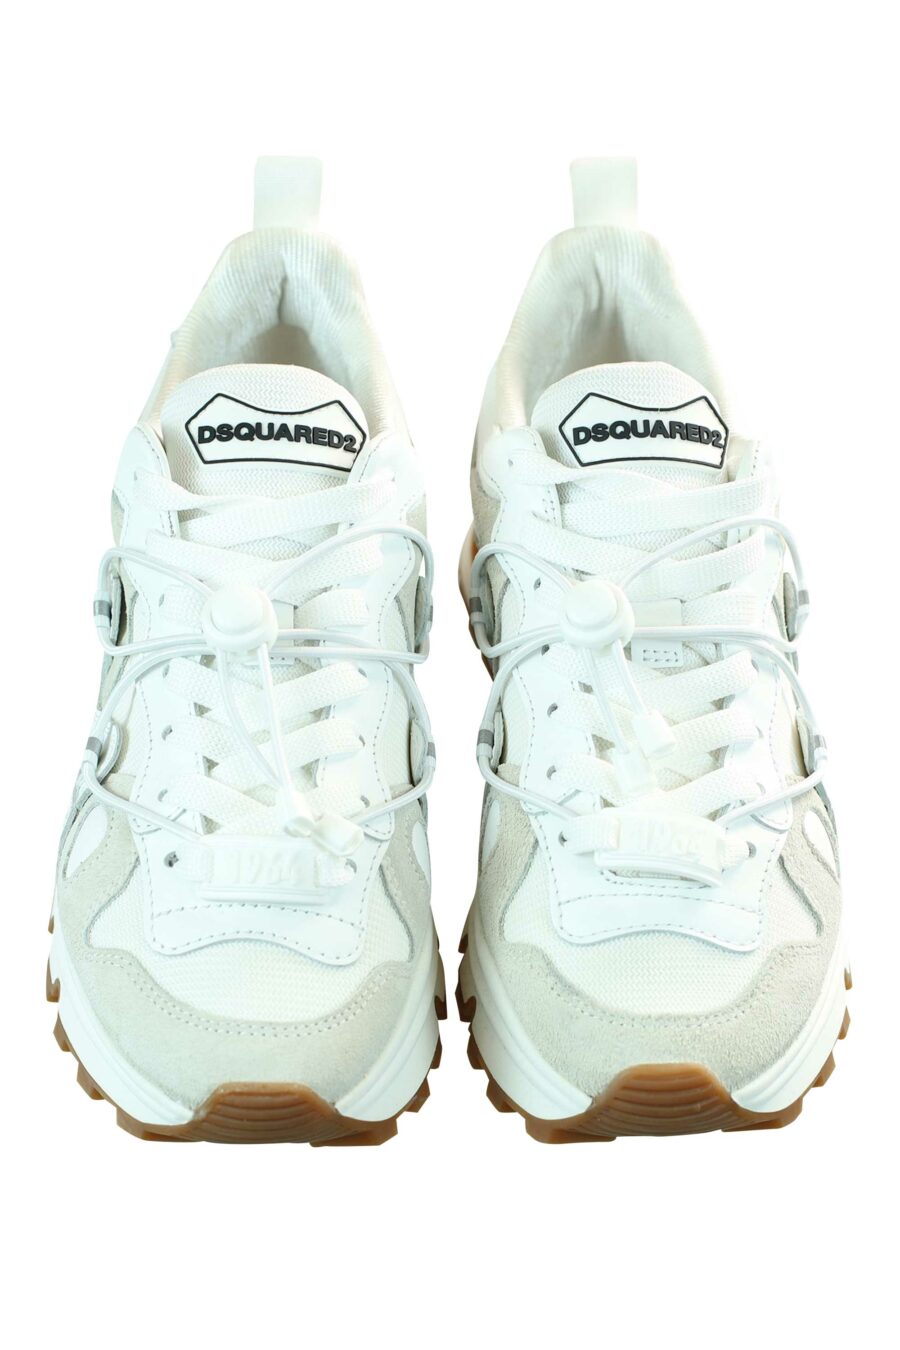 Zapatillas mix blanco con plataforma blanca y suela marrón - 8055777195864 5